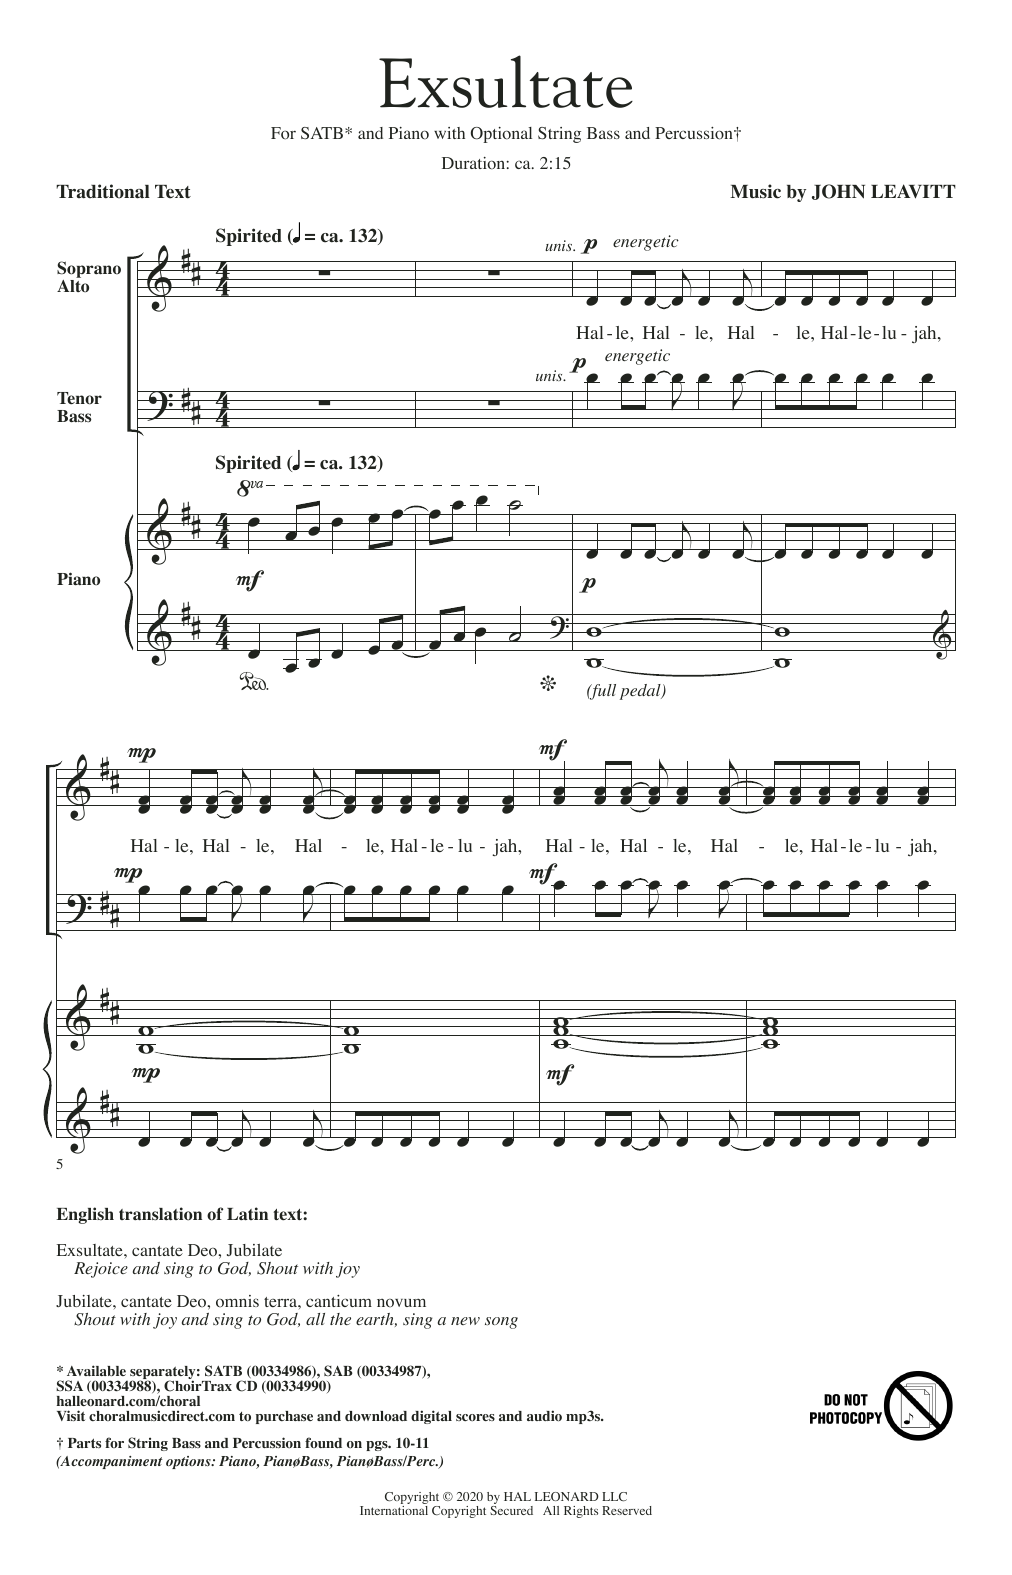 John Leavitt Exsultate Sheet Music Notes & Chords for SAB Choir - Download or Print PDF